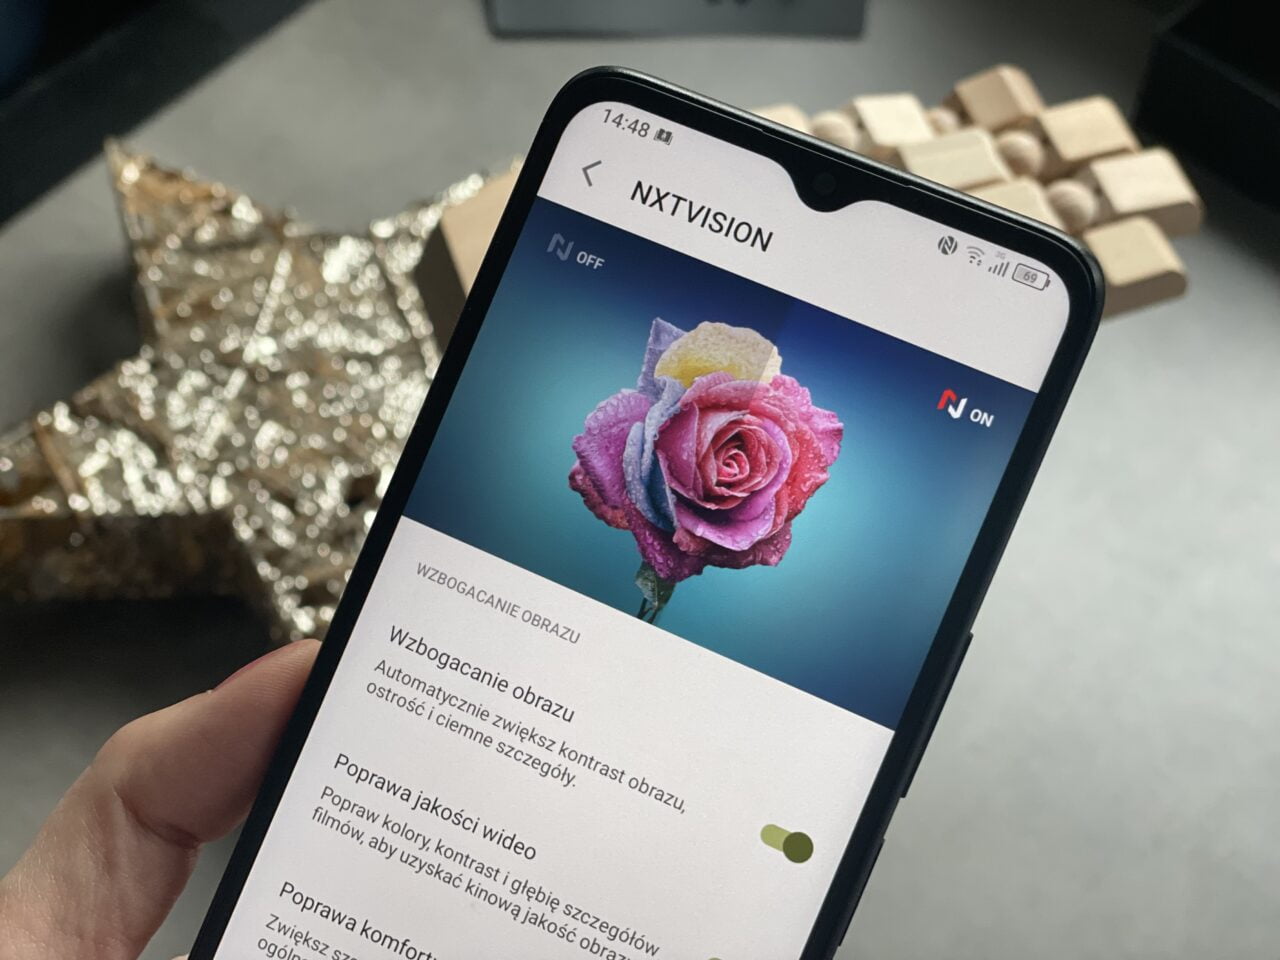 Ręka trzymająca smartfon z ekranem wyświetlającym różę w różnych kolorach, obok tekstu dotyczącego ustawień wzbogacania obrazu.